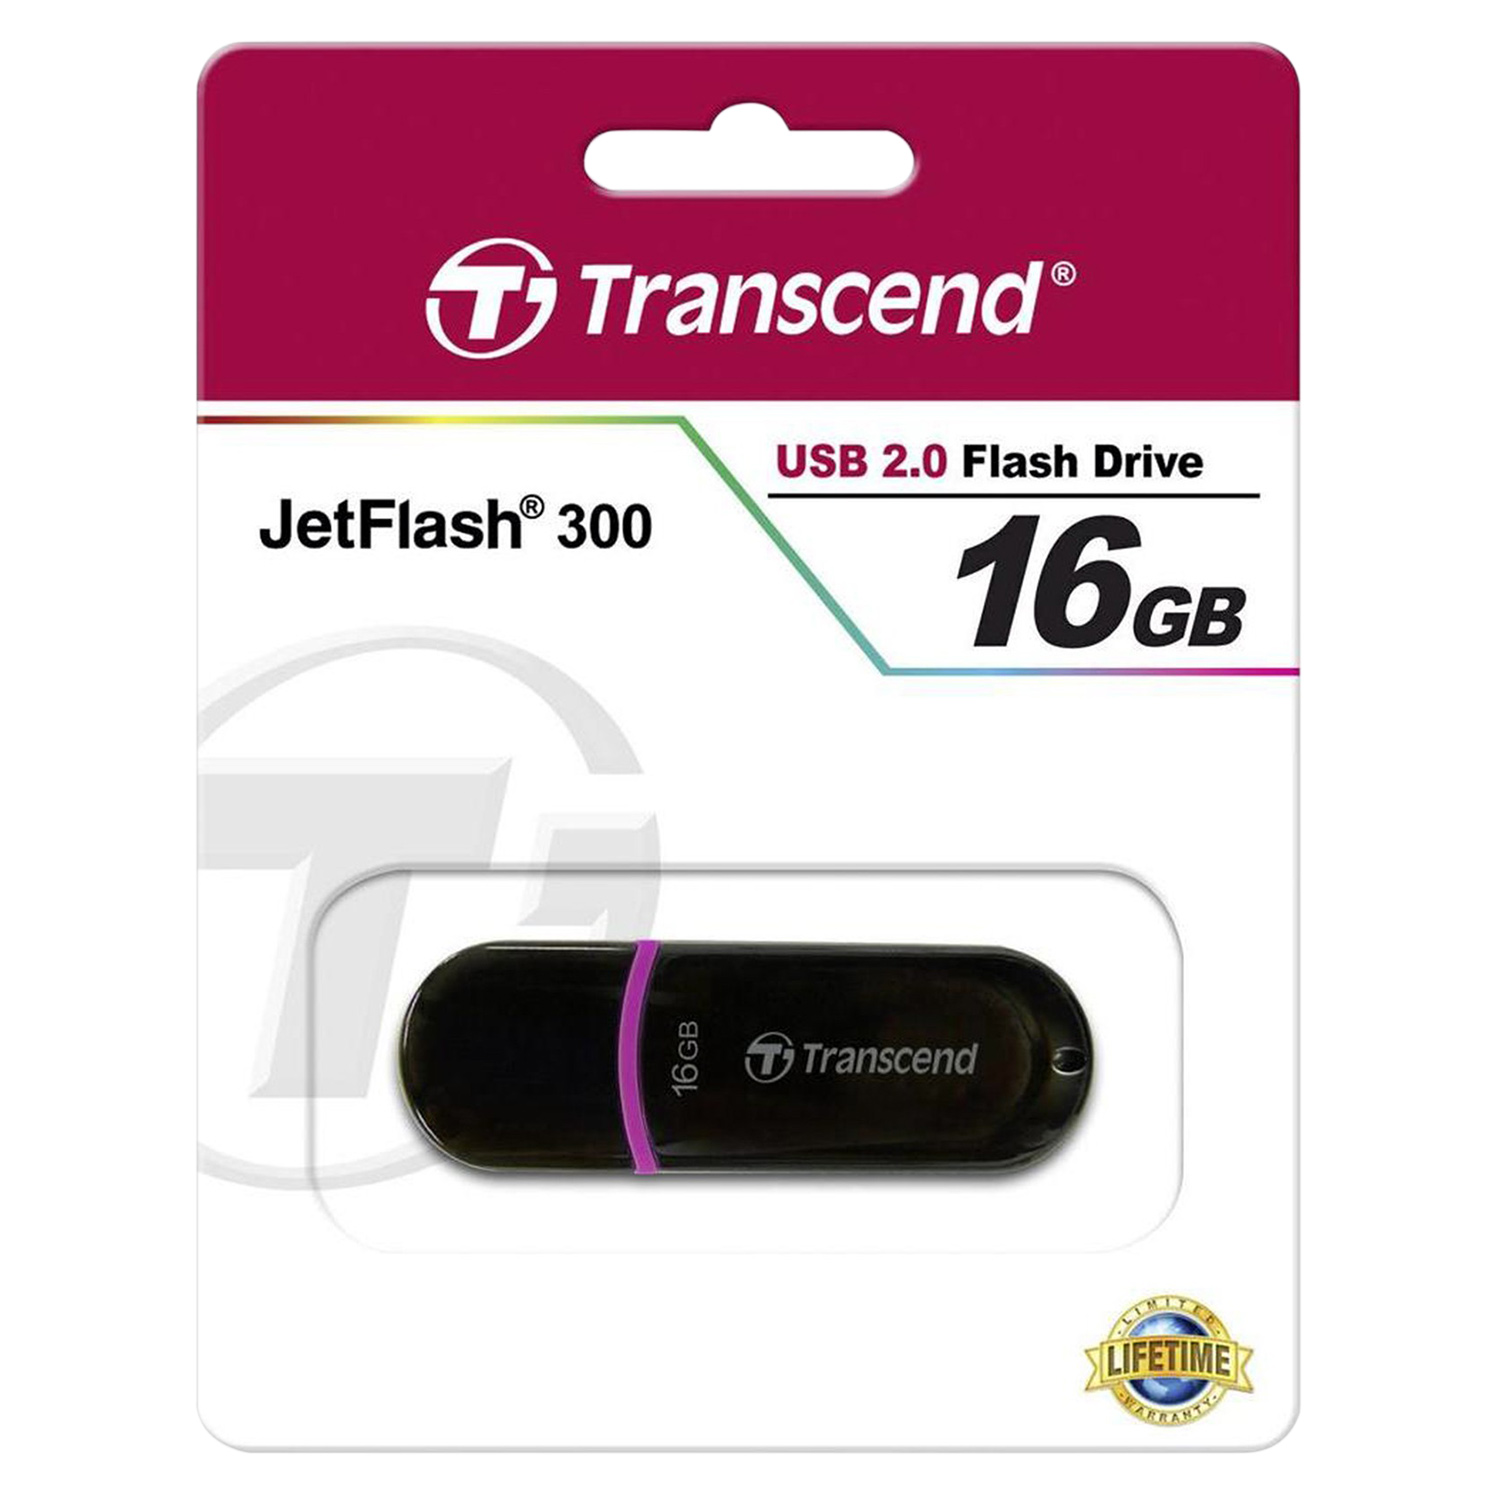 USBTranscend Jetflash 300TS16GJF300 16GB - USB 2.0